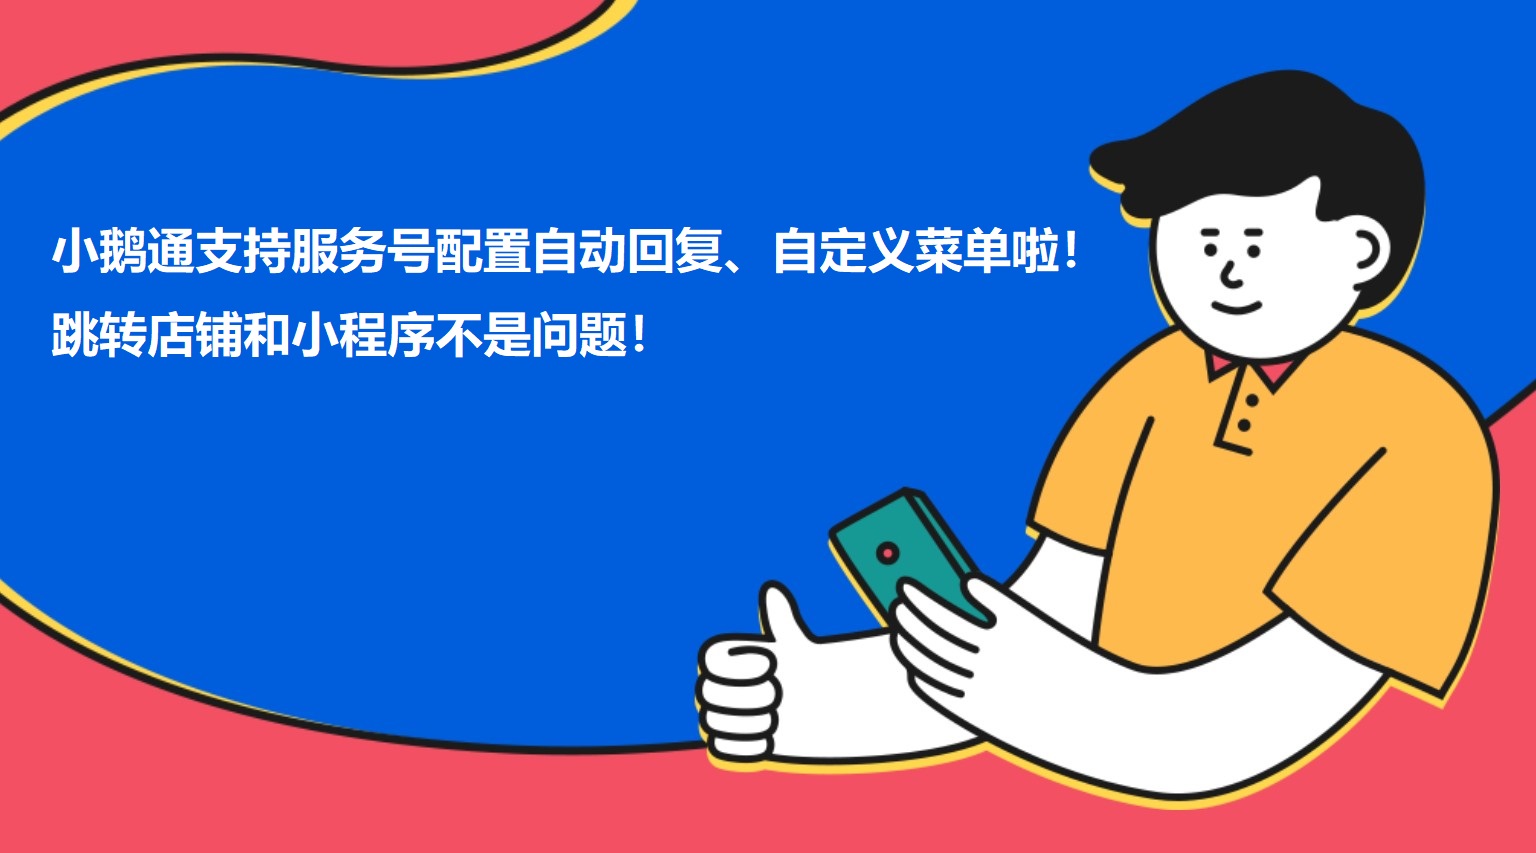 江西小鹅通支持服务号配置自动回复、自定义菜单啦！跳转店铺和小程序不是问题！